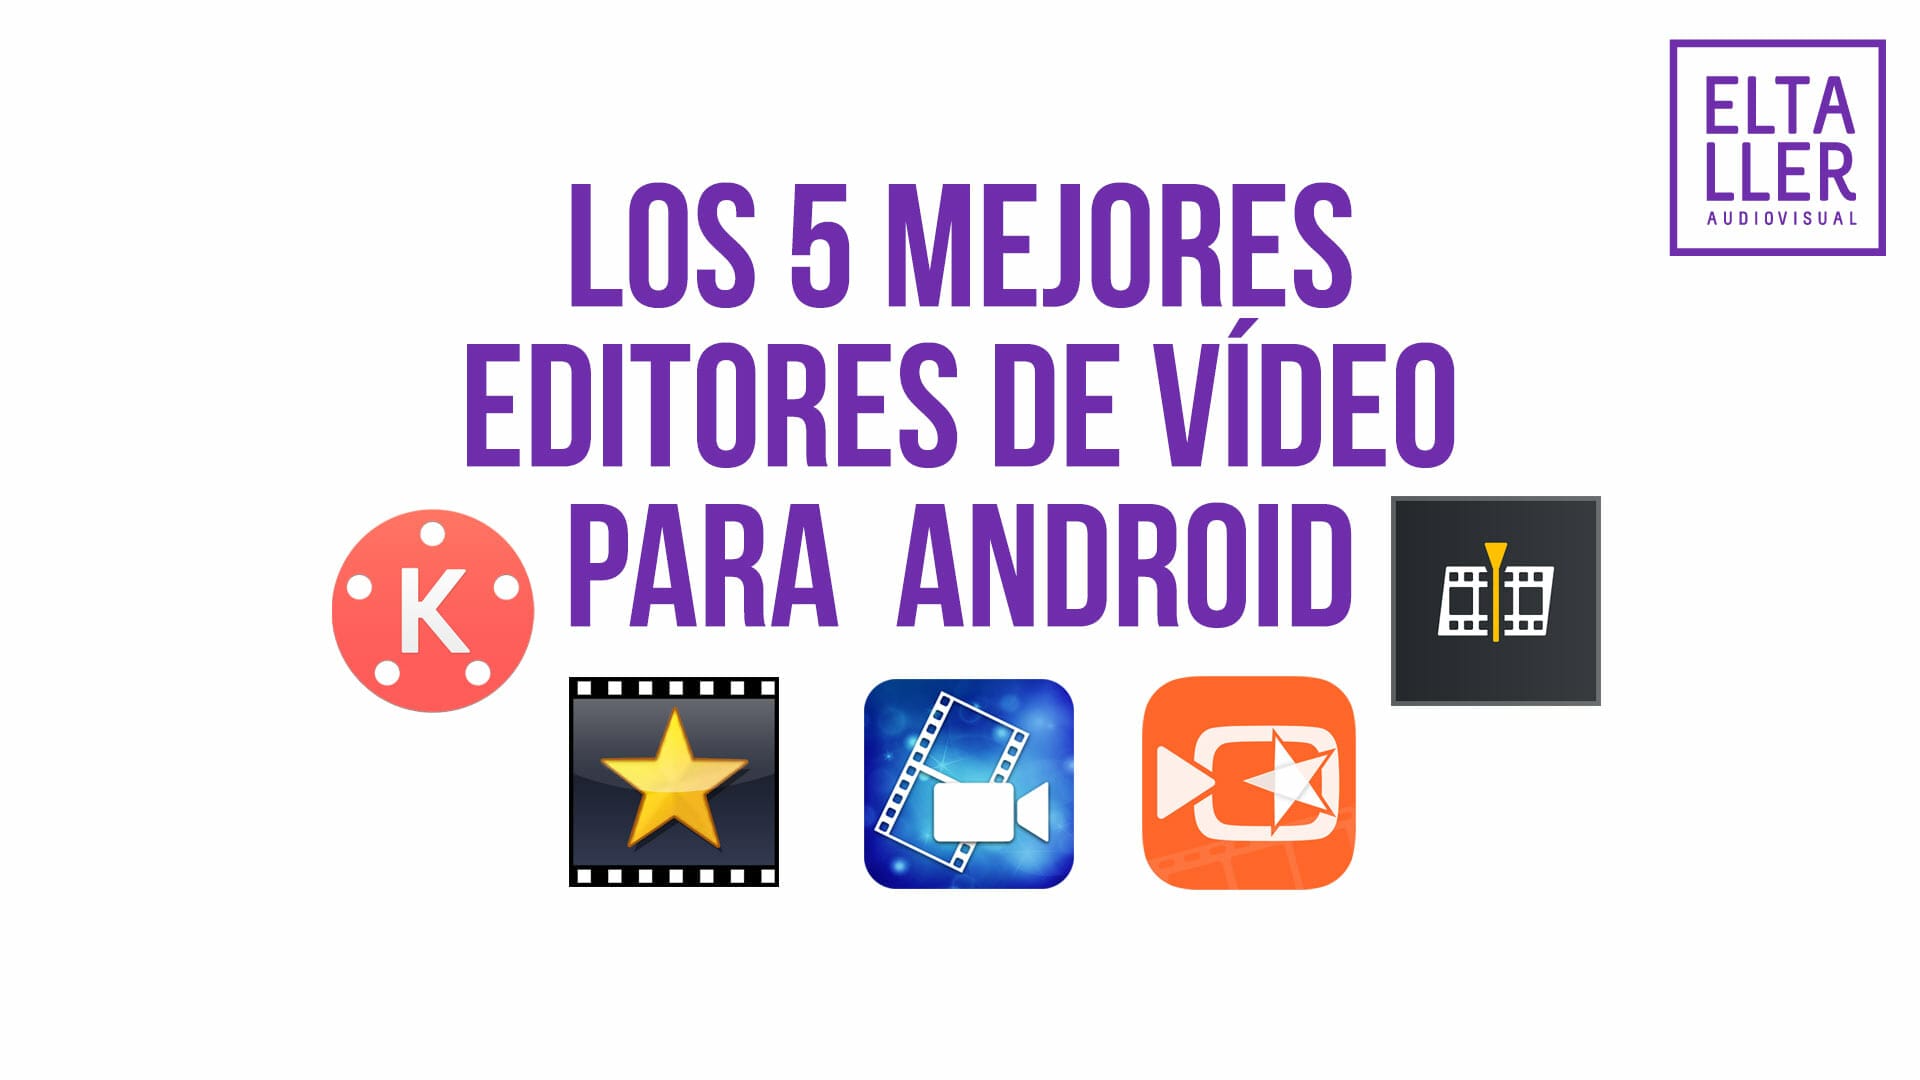 Ya puedes montar tus propios vídeos con estos editores de vídeo Android, los 5 mejores